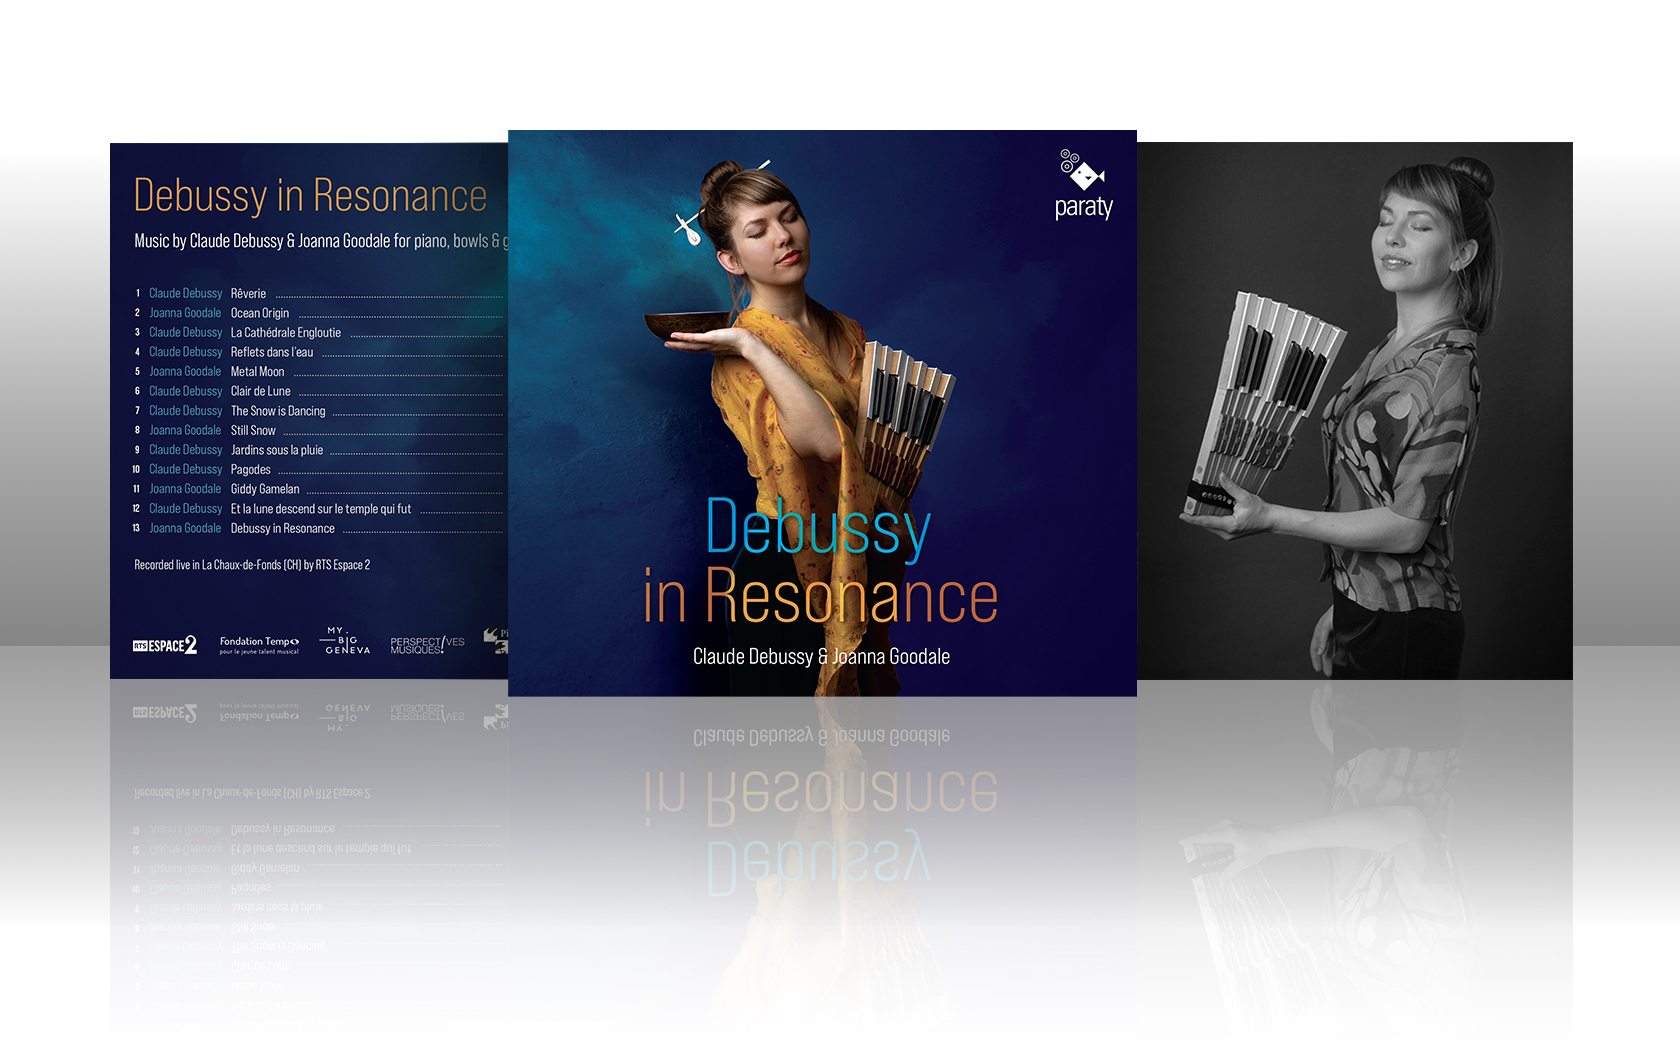 Sortie du CD “DEBUSSY IN RESONANCE” by Joanna Goodale